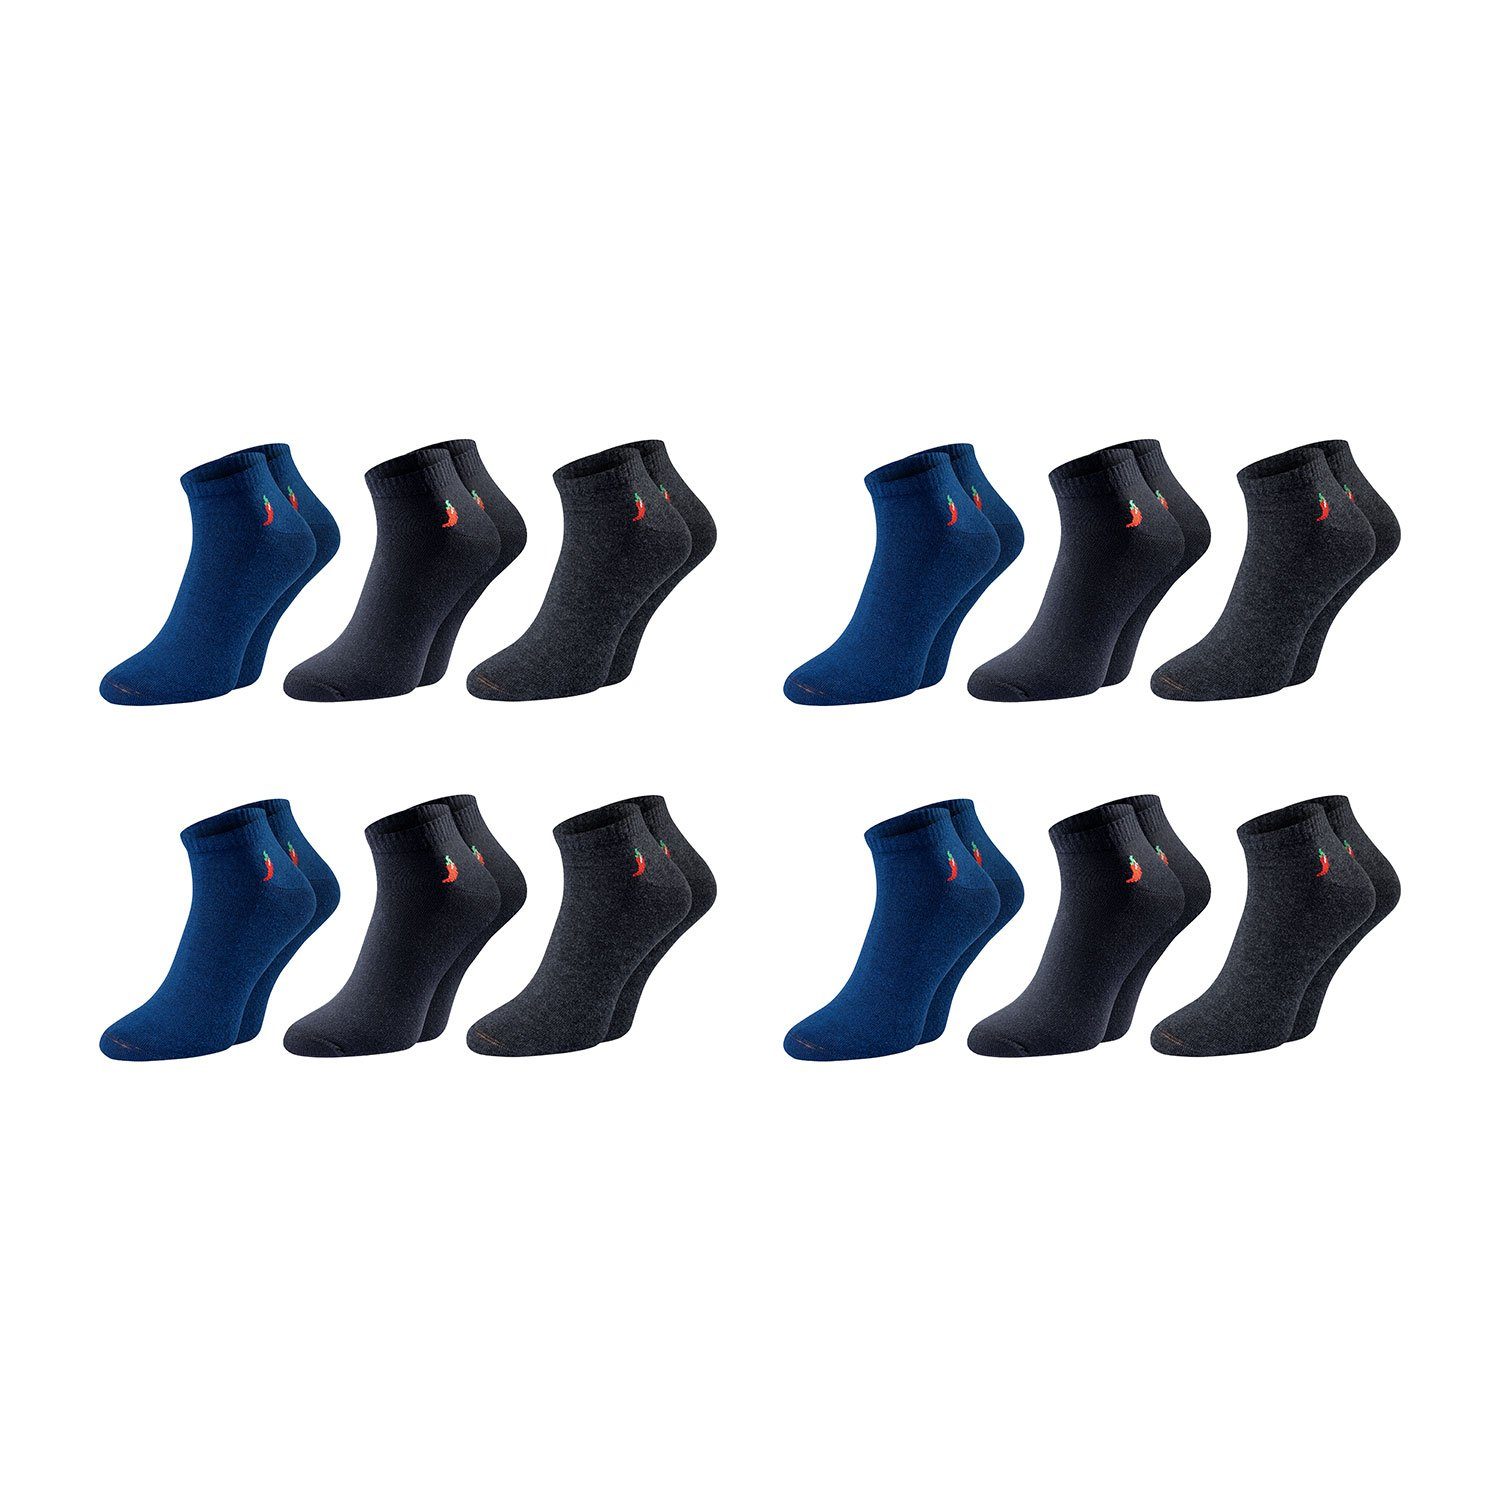 Chili Lifestyle Strümpfe Dark Socken, 12 Paar, für Damen und Herren, Sport, Freizeit